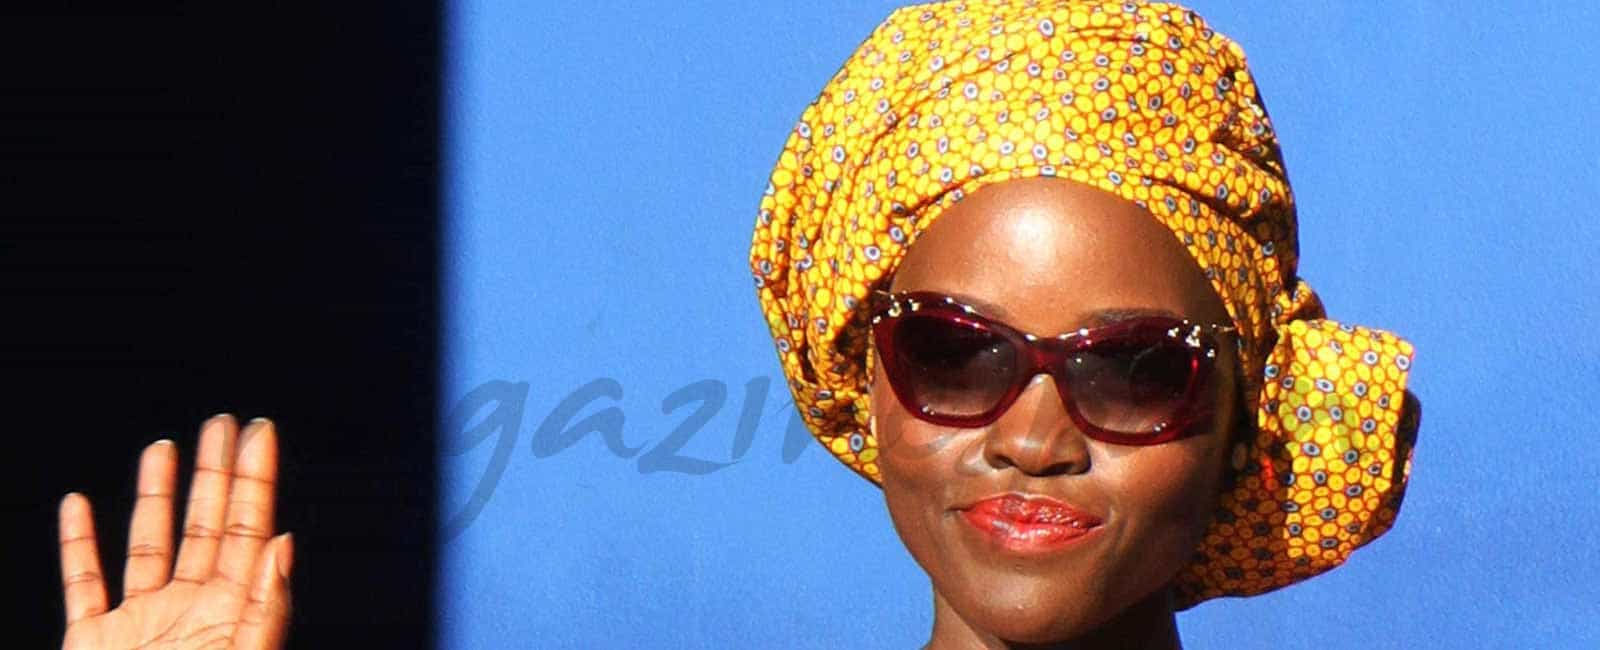 El estilo africano de Lupita Nyong’o en la Gran Manzana